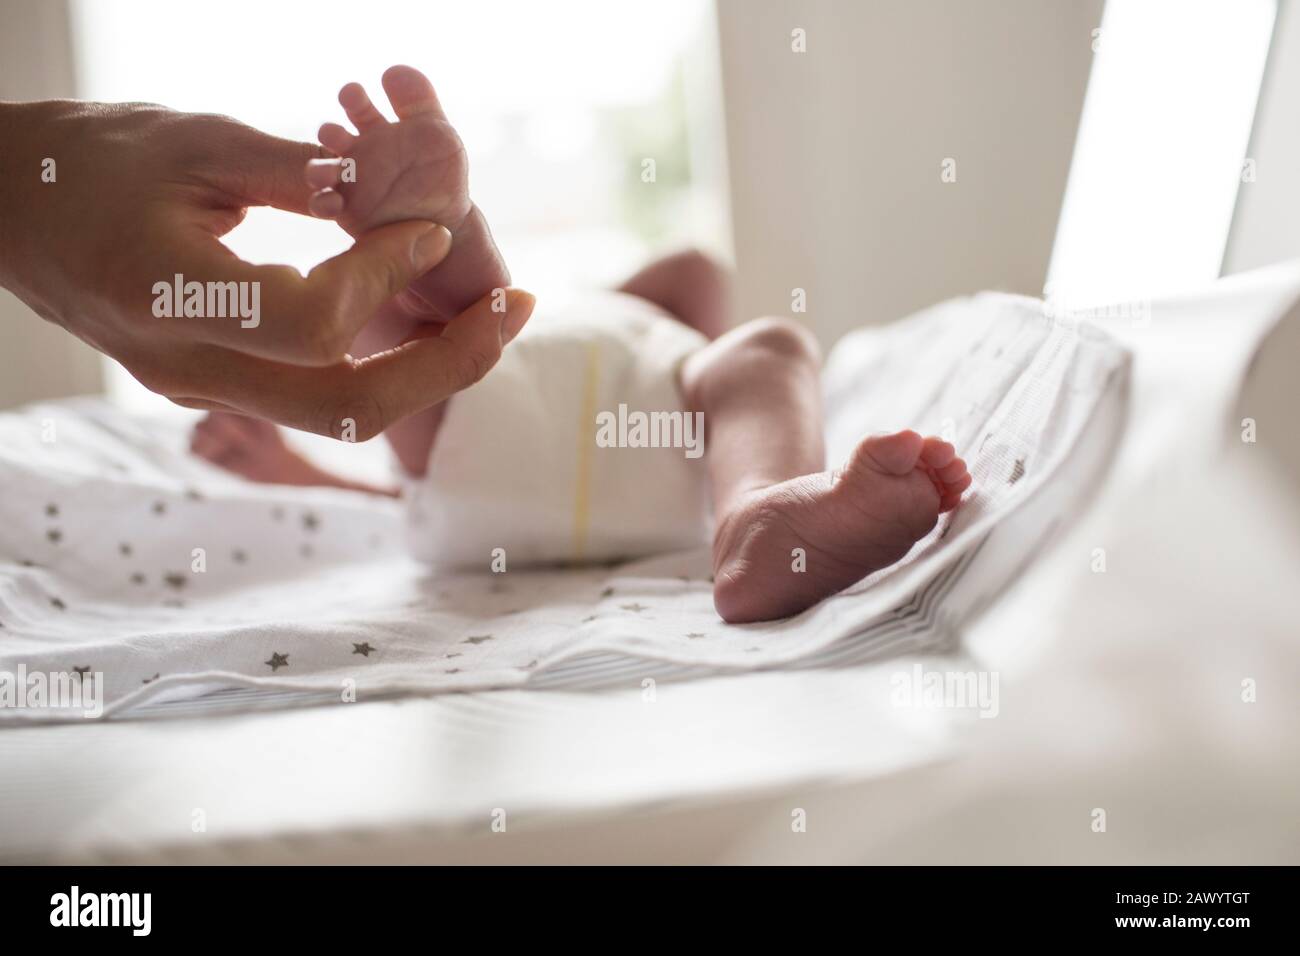 Mutter, die einen kleinen Fuß des neugeborenen Sohnes auf dem Wechseltisch hält Stockfoto